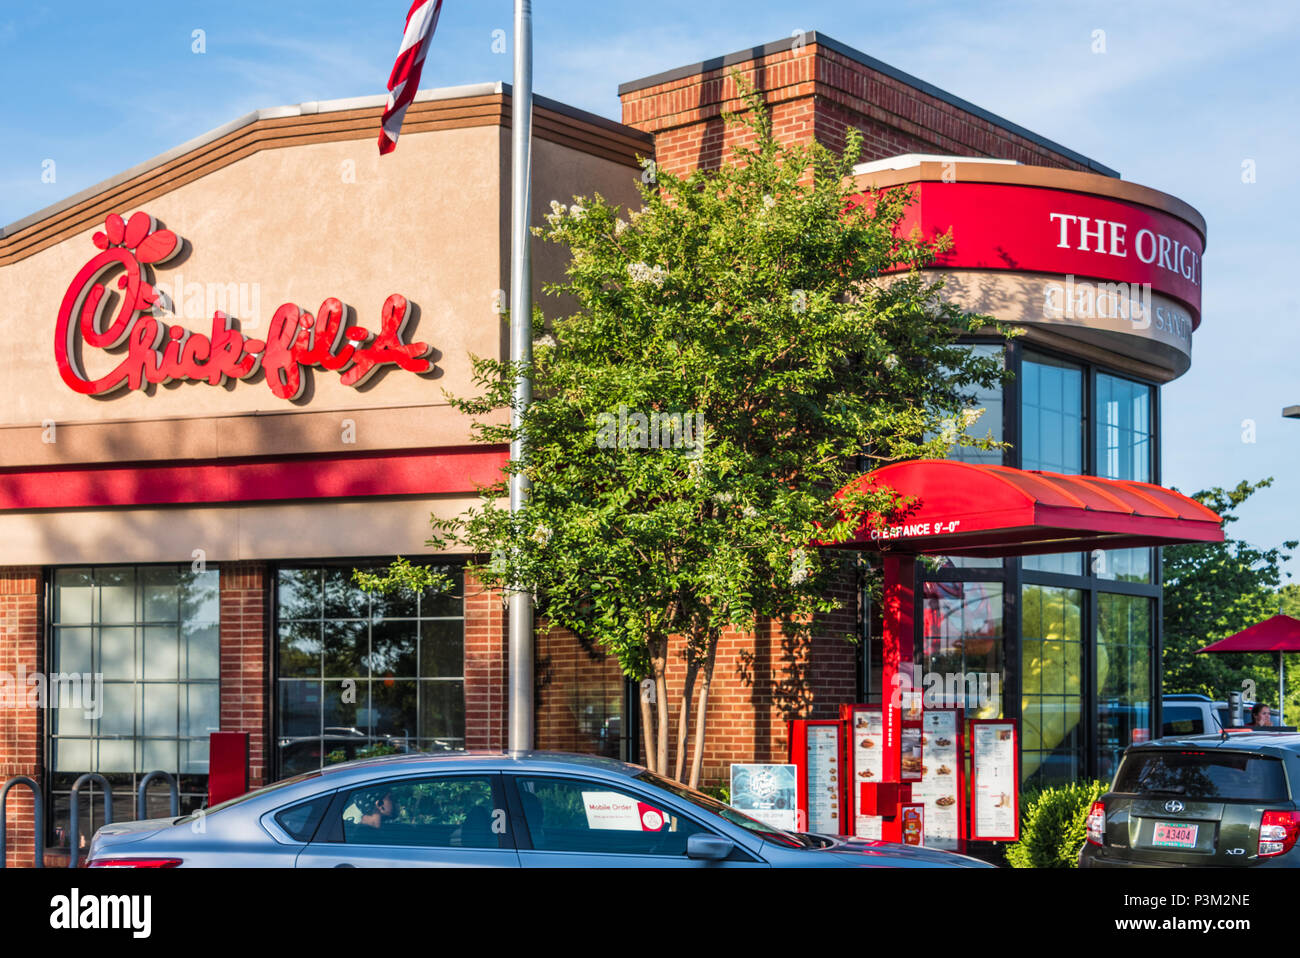 Besetzt Küken-fil-ein Restaurant in Olive Branch, Mississippi. Chick-fil-A ist der top-rated Fast Food Restaurant in den Vereinigten Staaten. Stockfoto